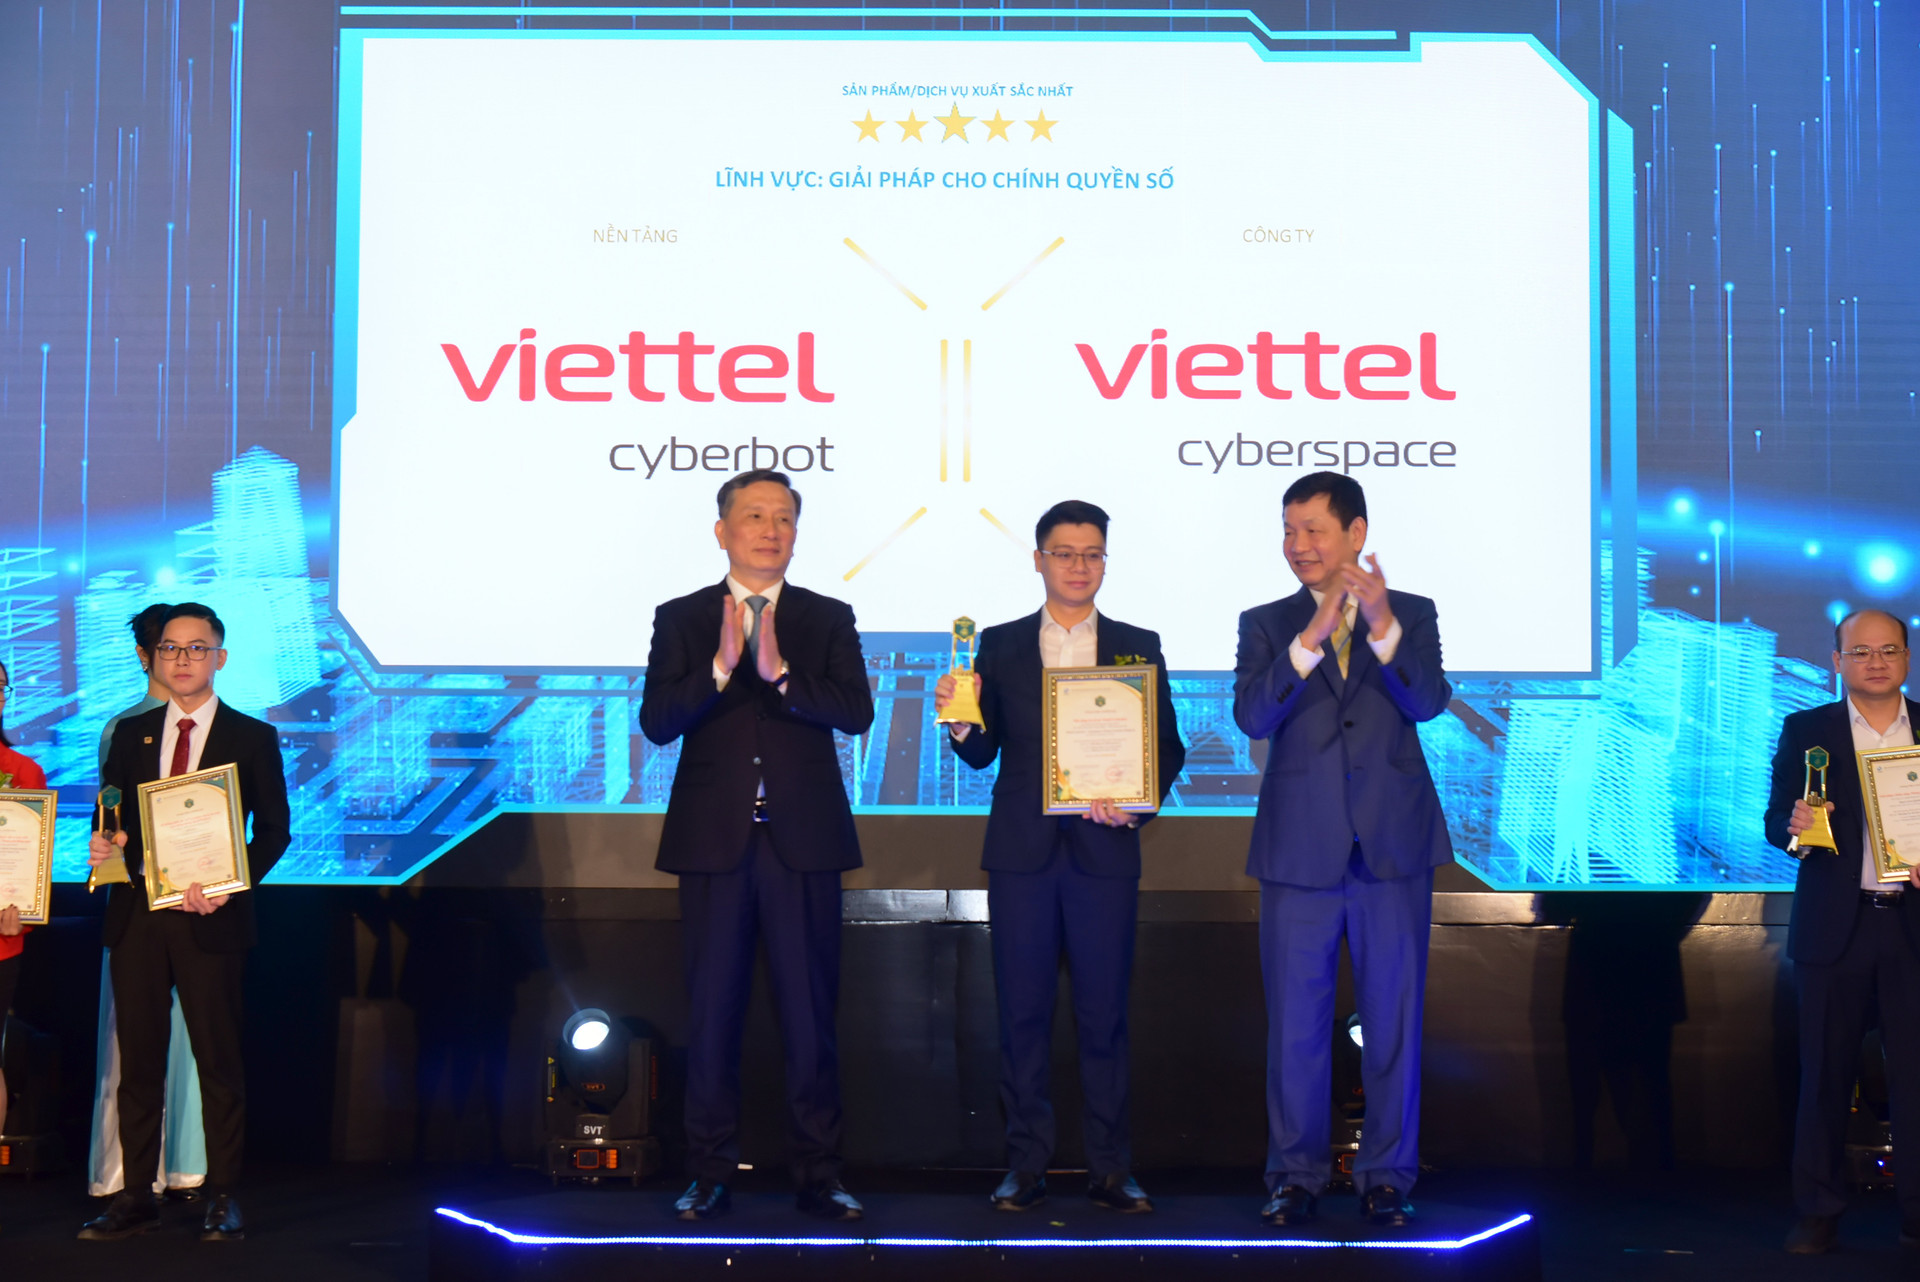 Trợ lý ảo của Viettel giành giải xuất sắc tại Vietnam Smart City Awards